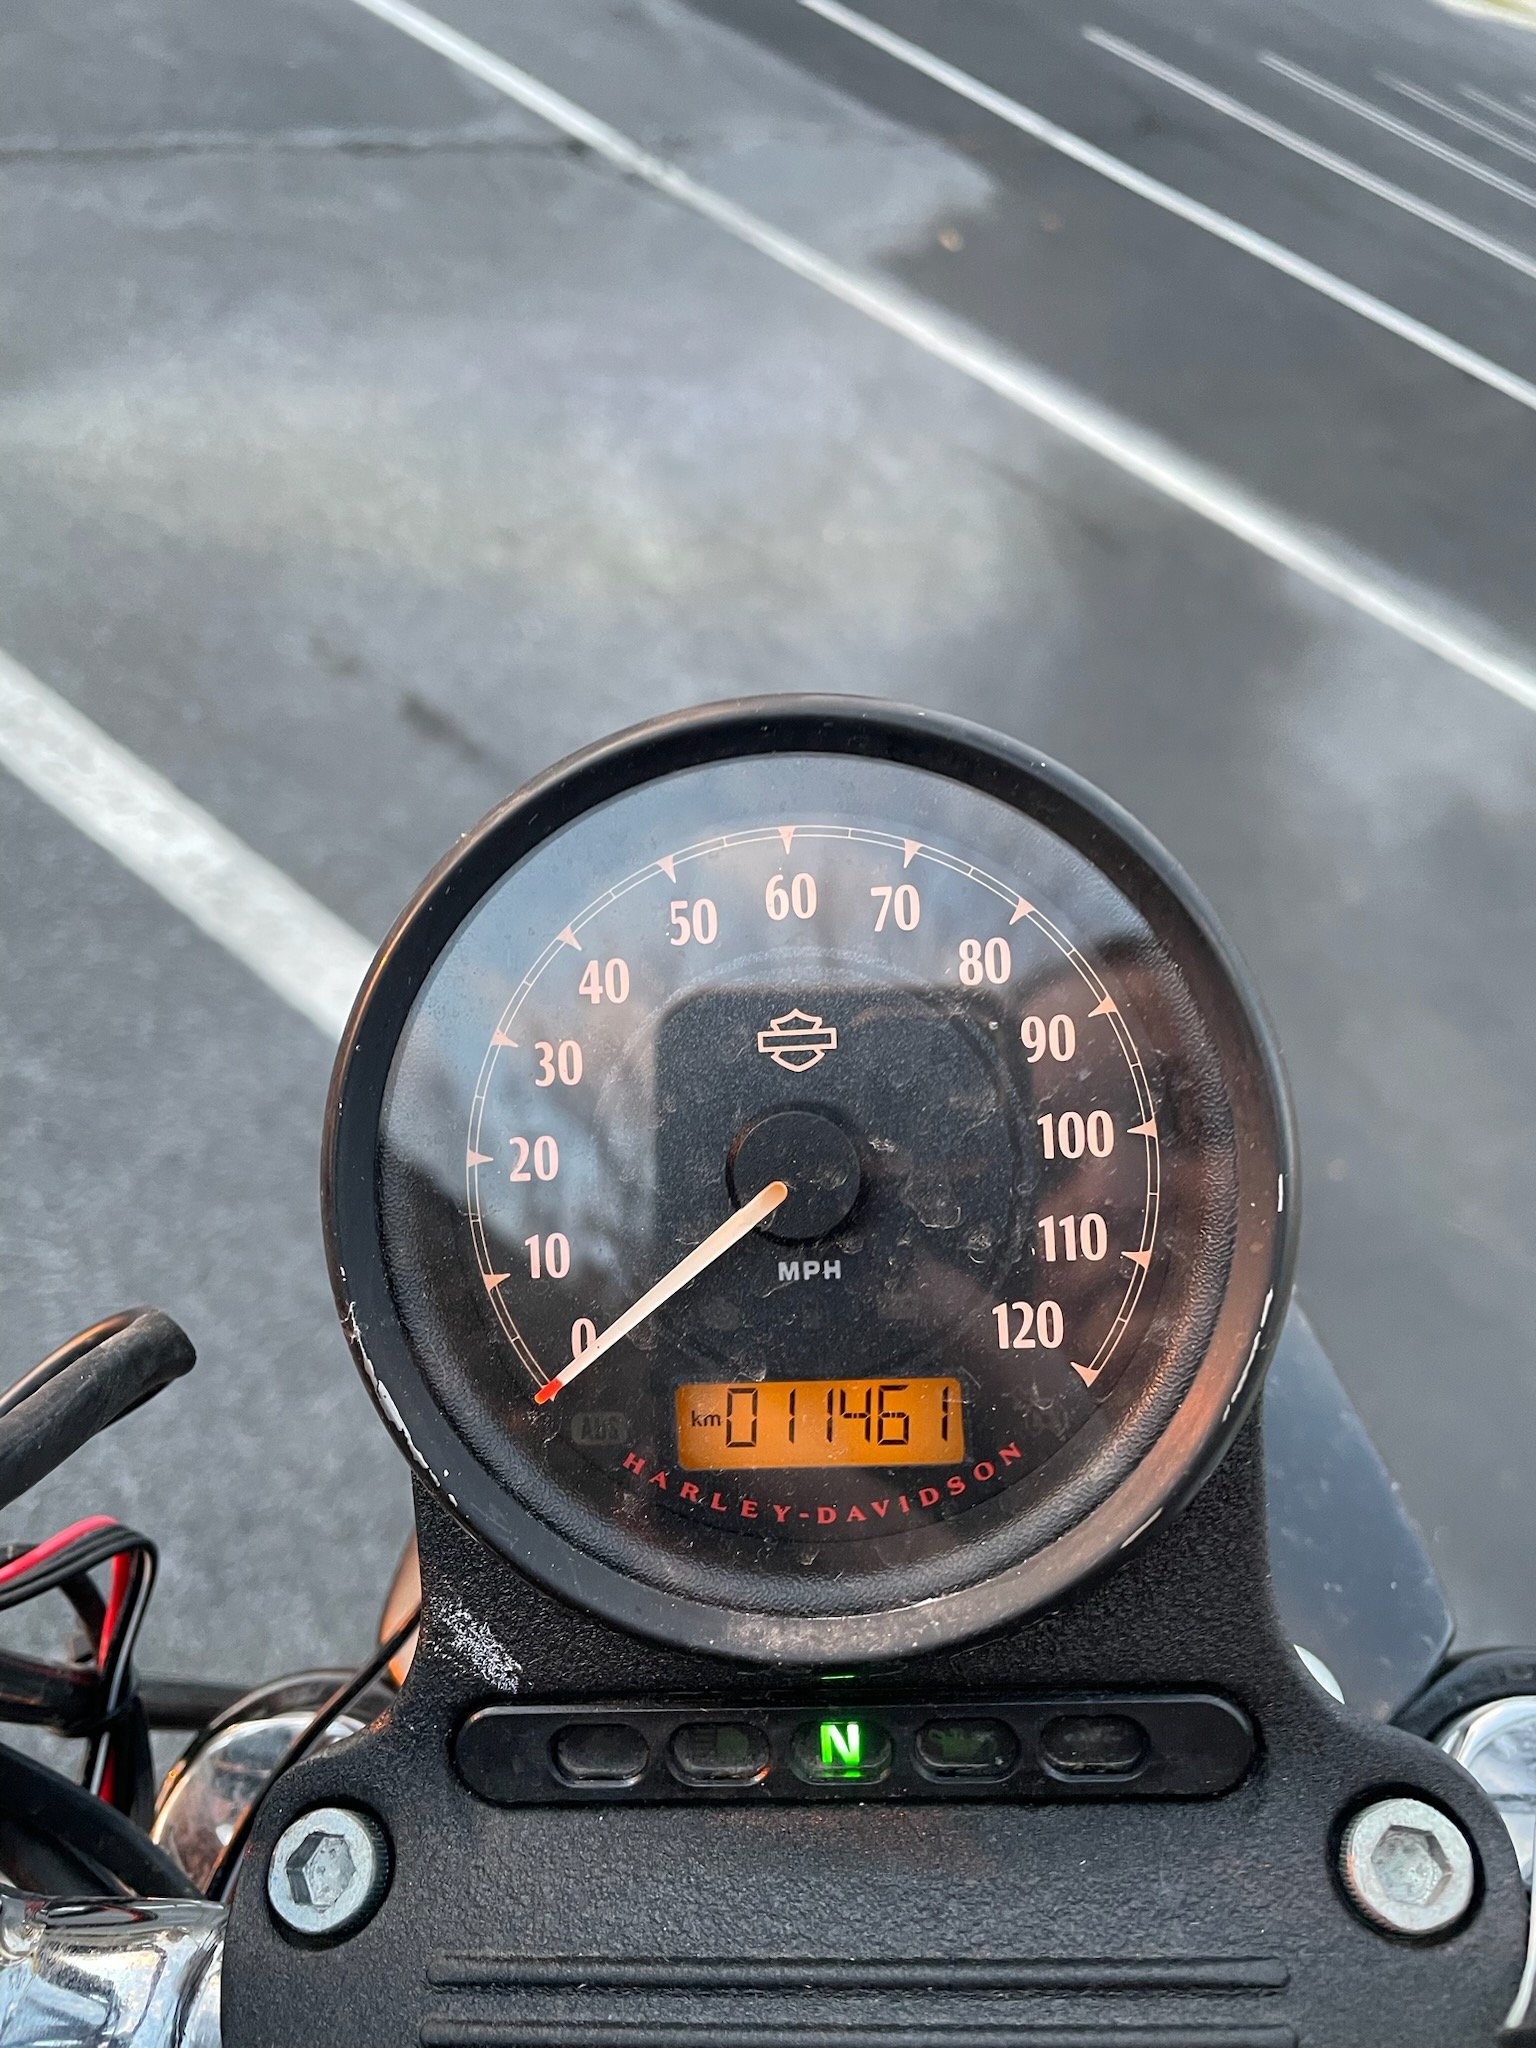 2019 Harley Odometer .jpg